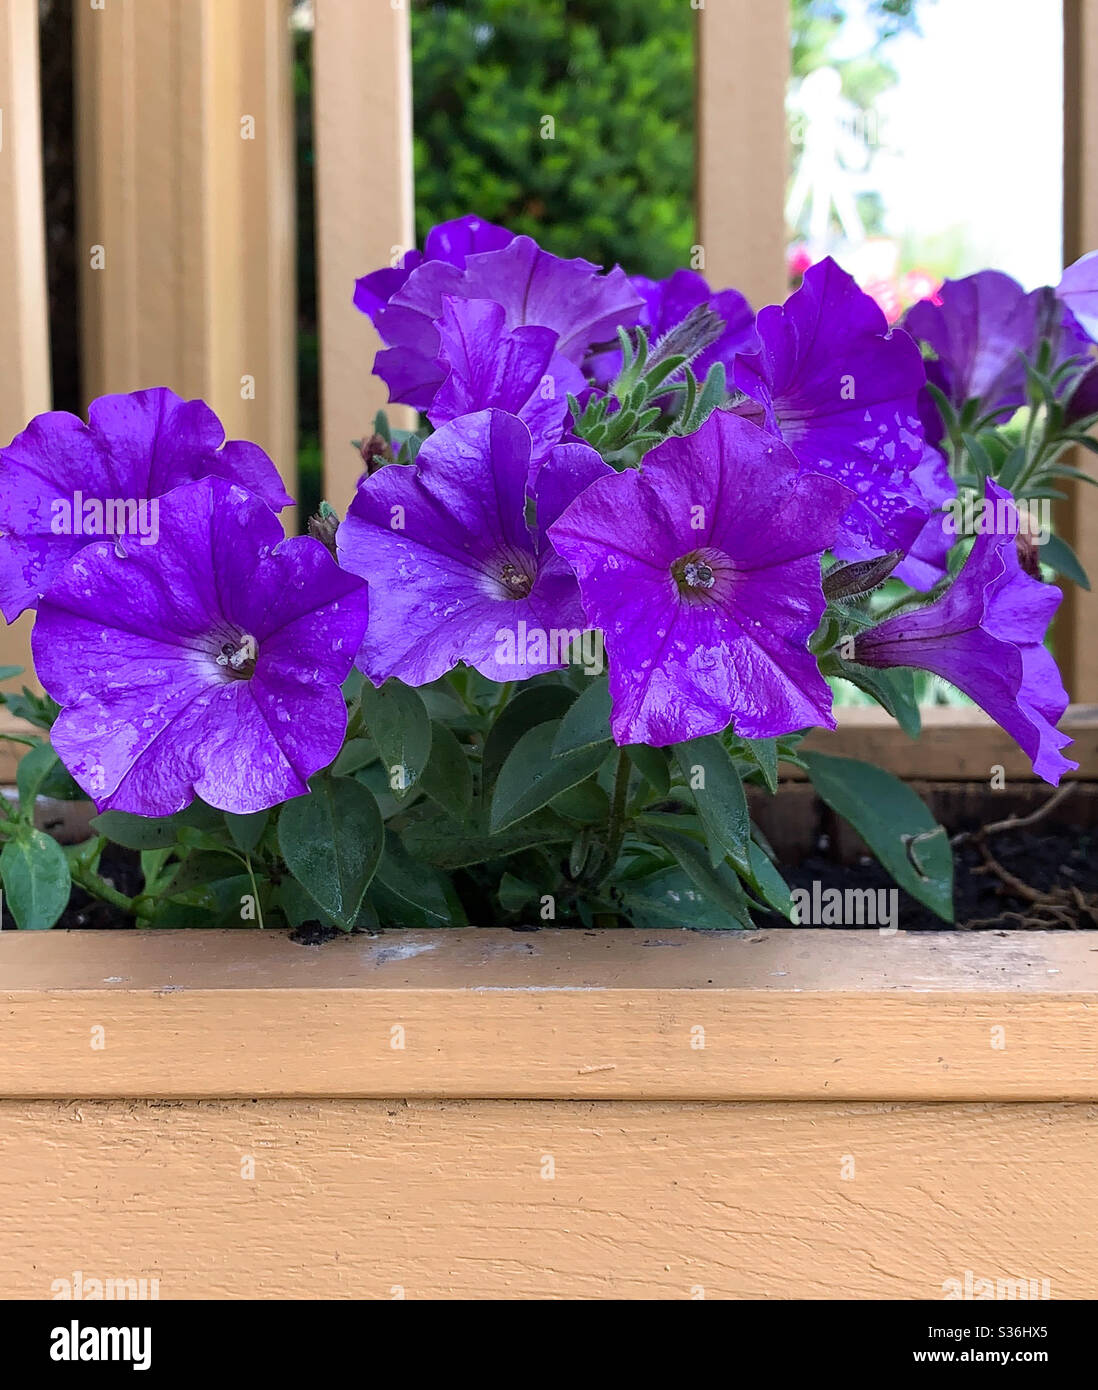 DUBUQUE, IOWA, 24 maggio 2020 – Chiudiate la foto delle petunie viola, ubriacate dalla pioggia, in una piantatrice in una giornata di primavera luminosa e soleggiata. Foto Stock